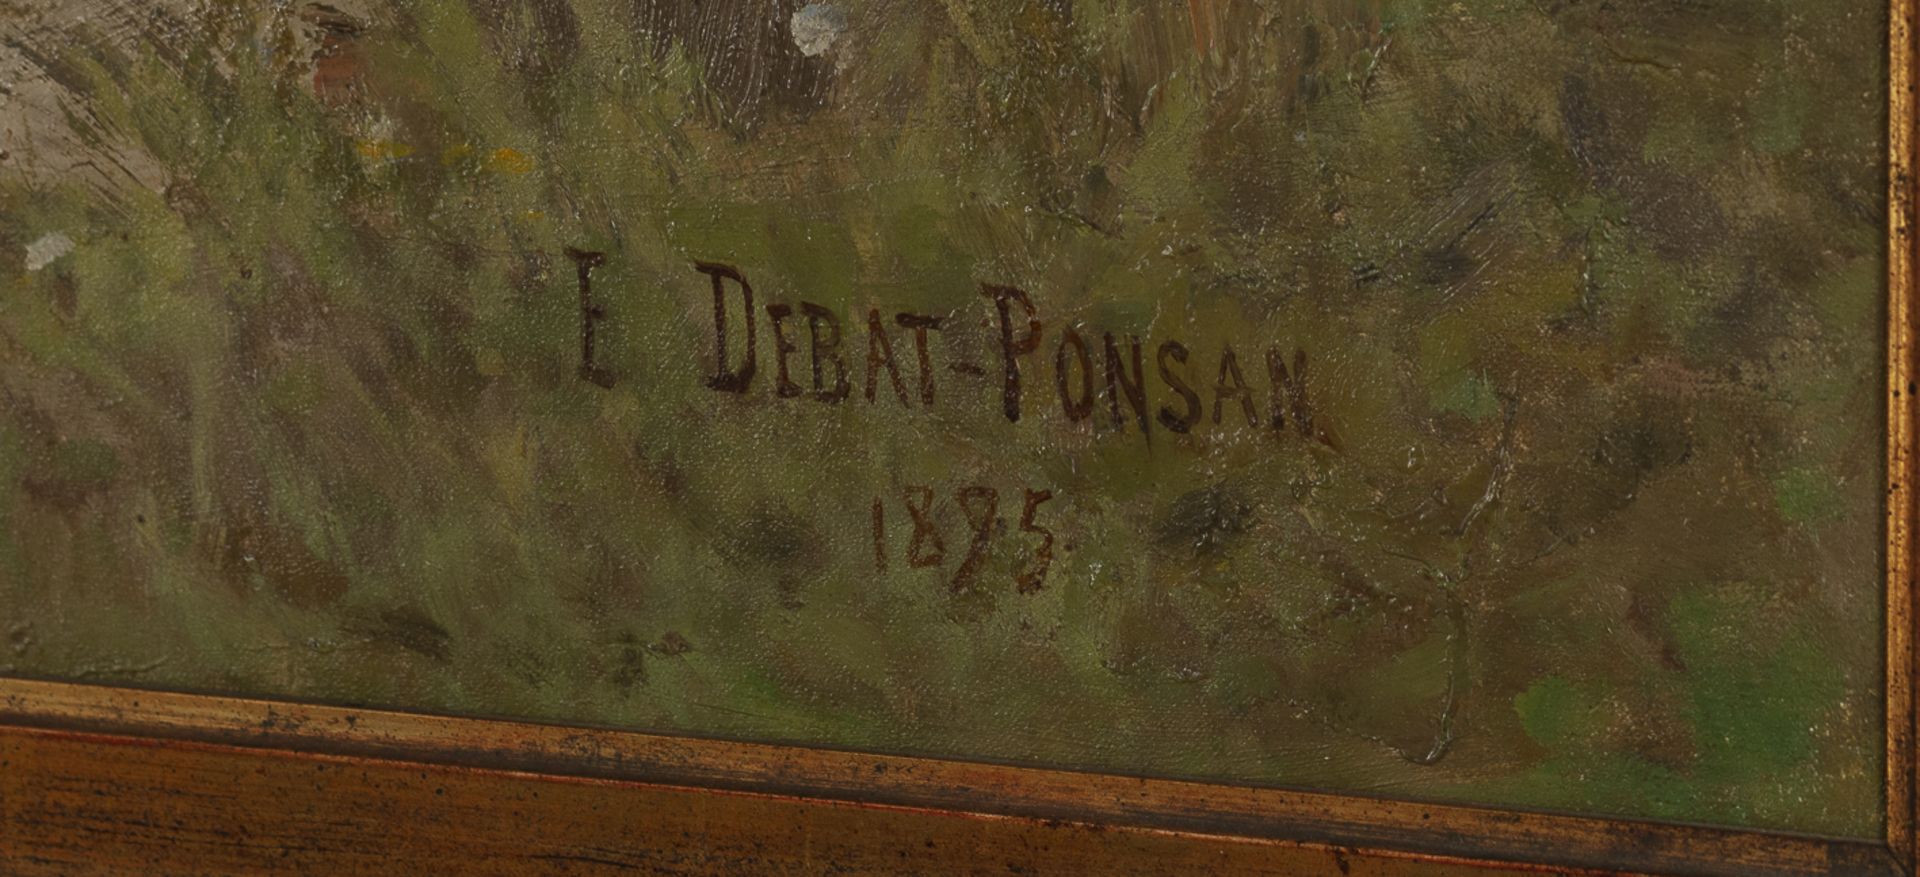 Edouard Debat-Ponsan (Toulouse 1847-1913 Paris) - Image 3 of 4